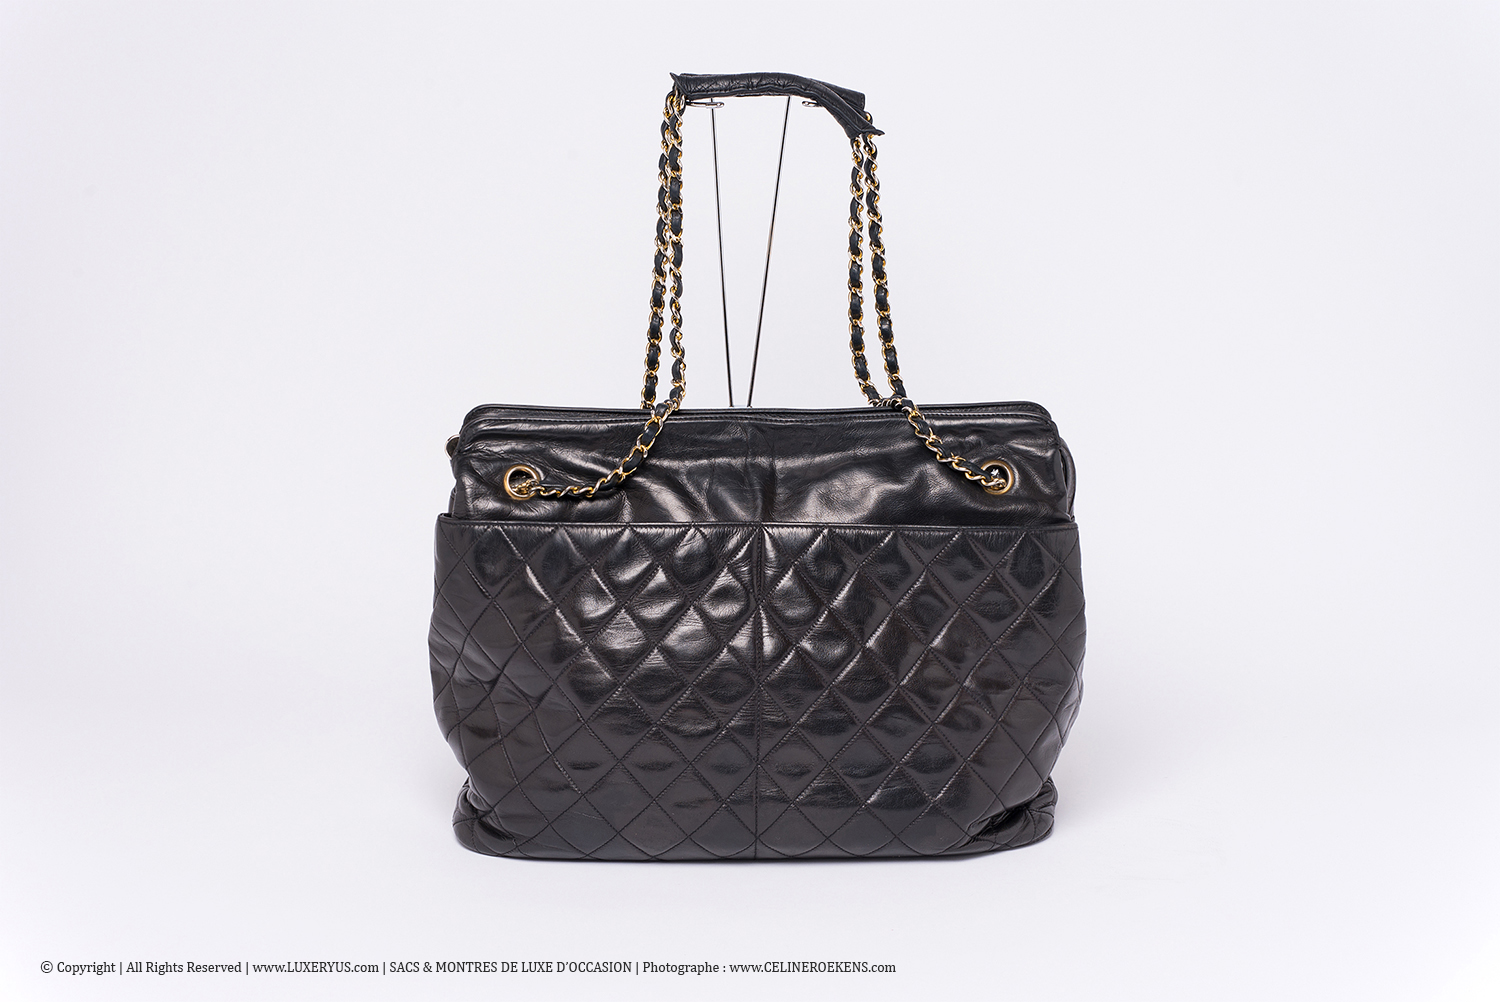 Sac Chanel Grand Cabas Authentique d'occasion Matelassé Vintage en cuir noir et bijouterie dorée